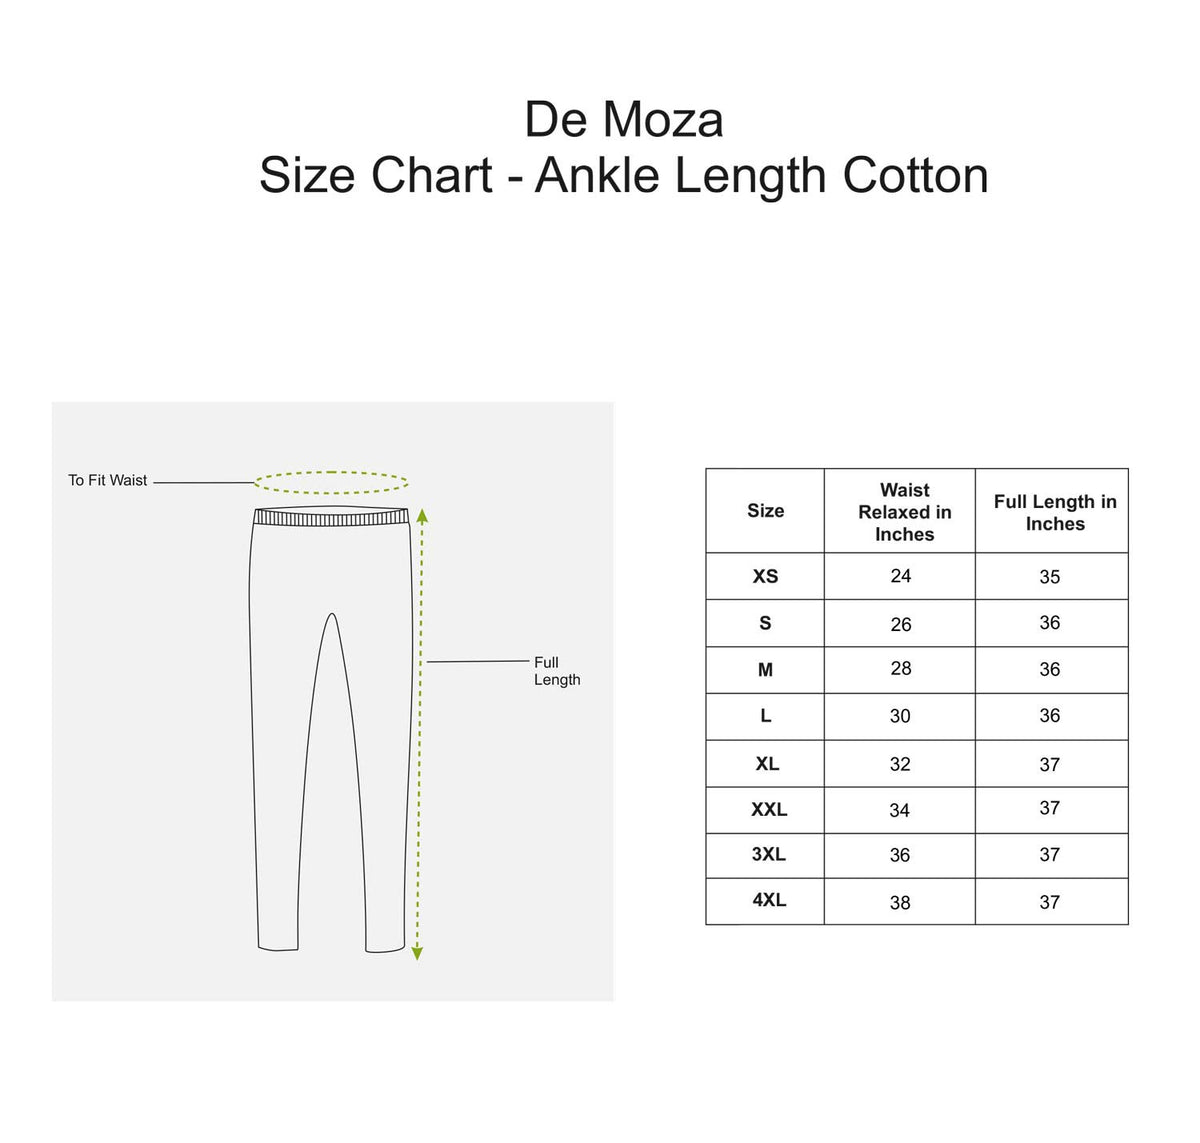 De Moza Ladies Ankle Length Leggings White - De Moza (7713481731)